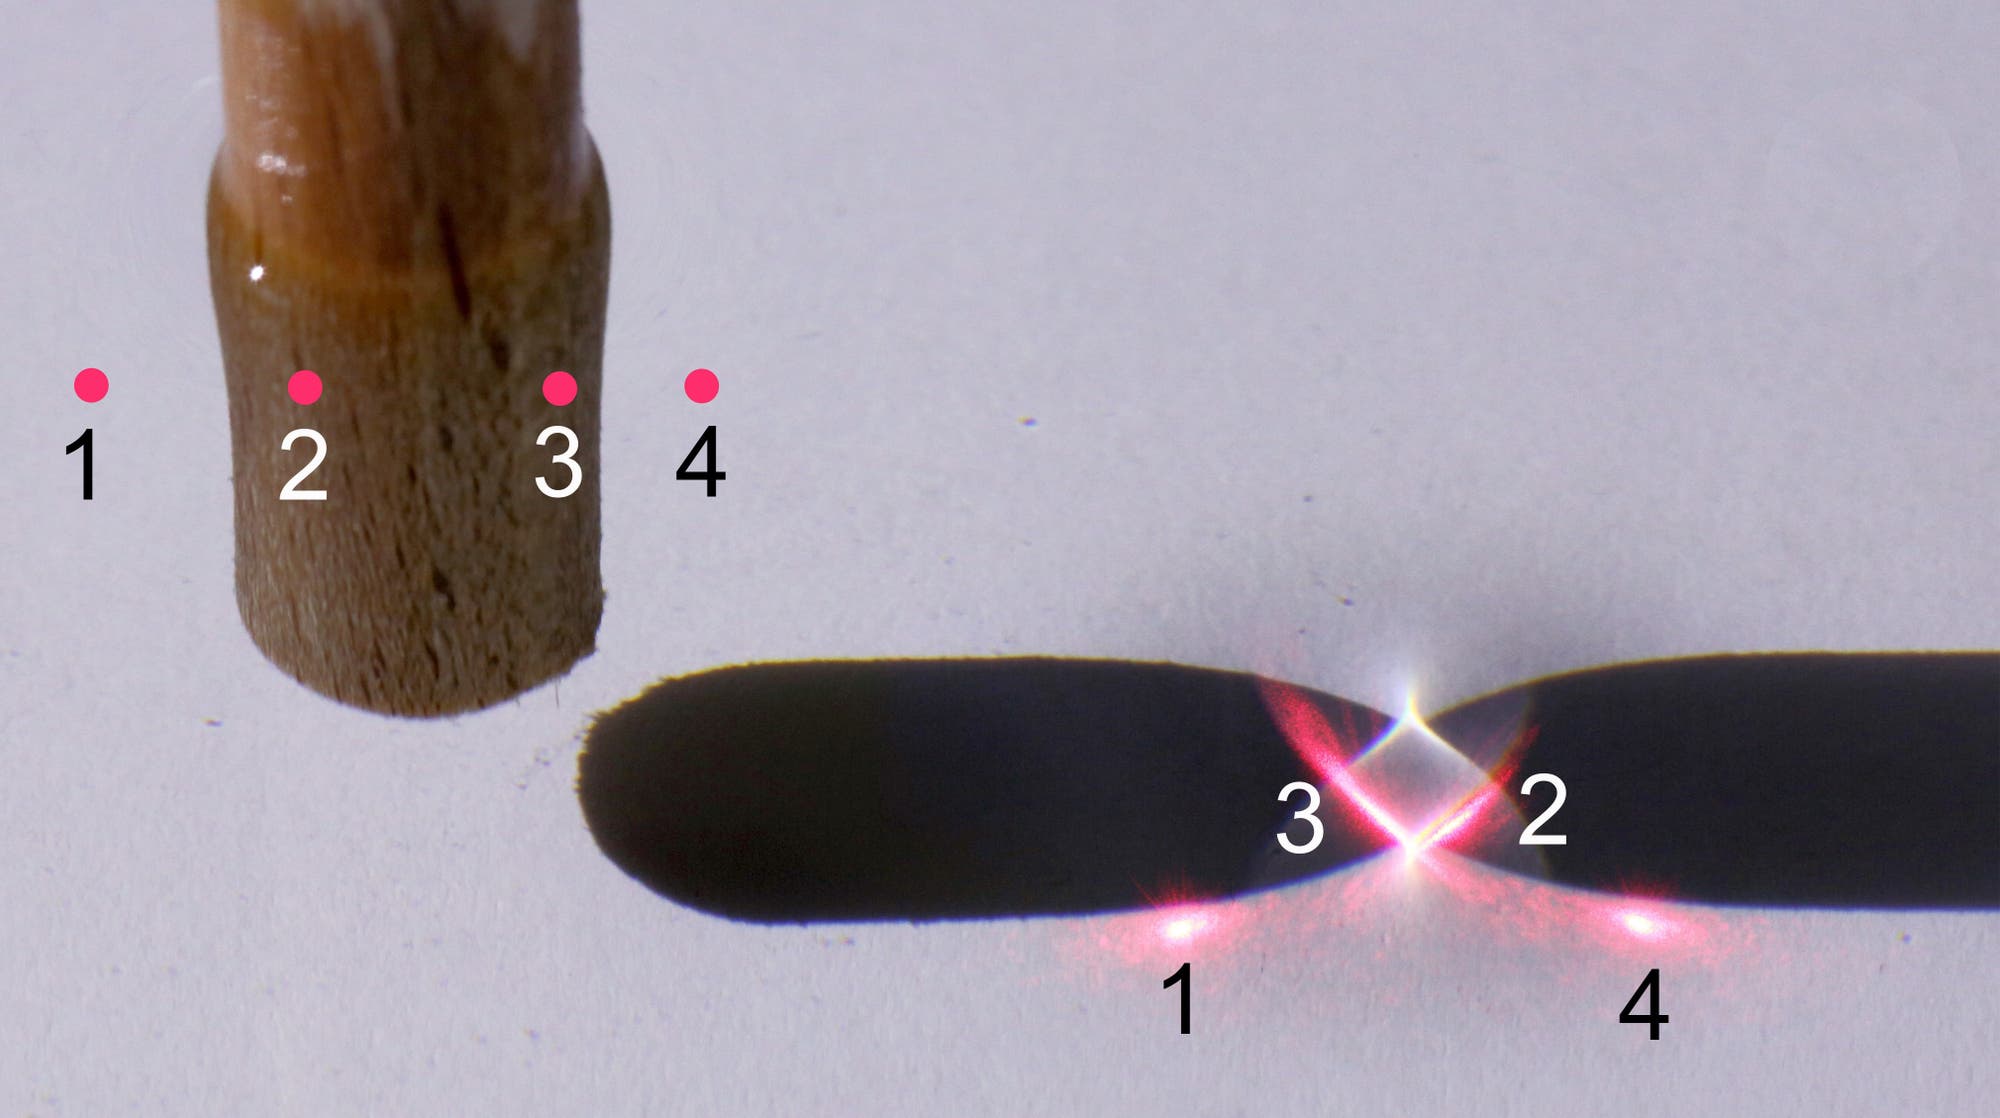 Ein Laserstrahl mit der gleichen Einfallrichtung wie das weiße Licht beleuchtet den Meniskus des eingetauchten Stabs an vier Punkten; die beiden mittleren Lichtpunkte treffen auf dem Gefäßboden genau auf die engste Stelle.